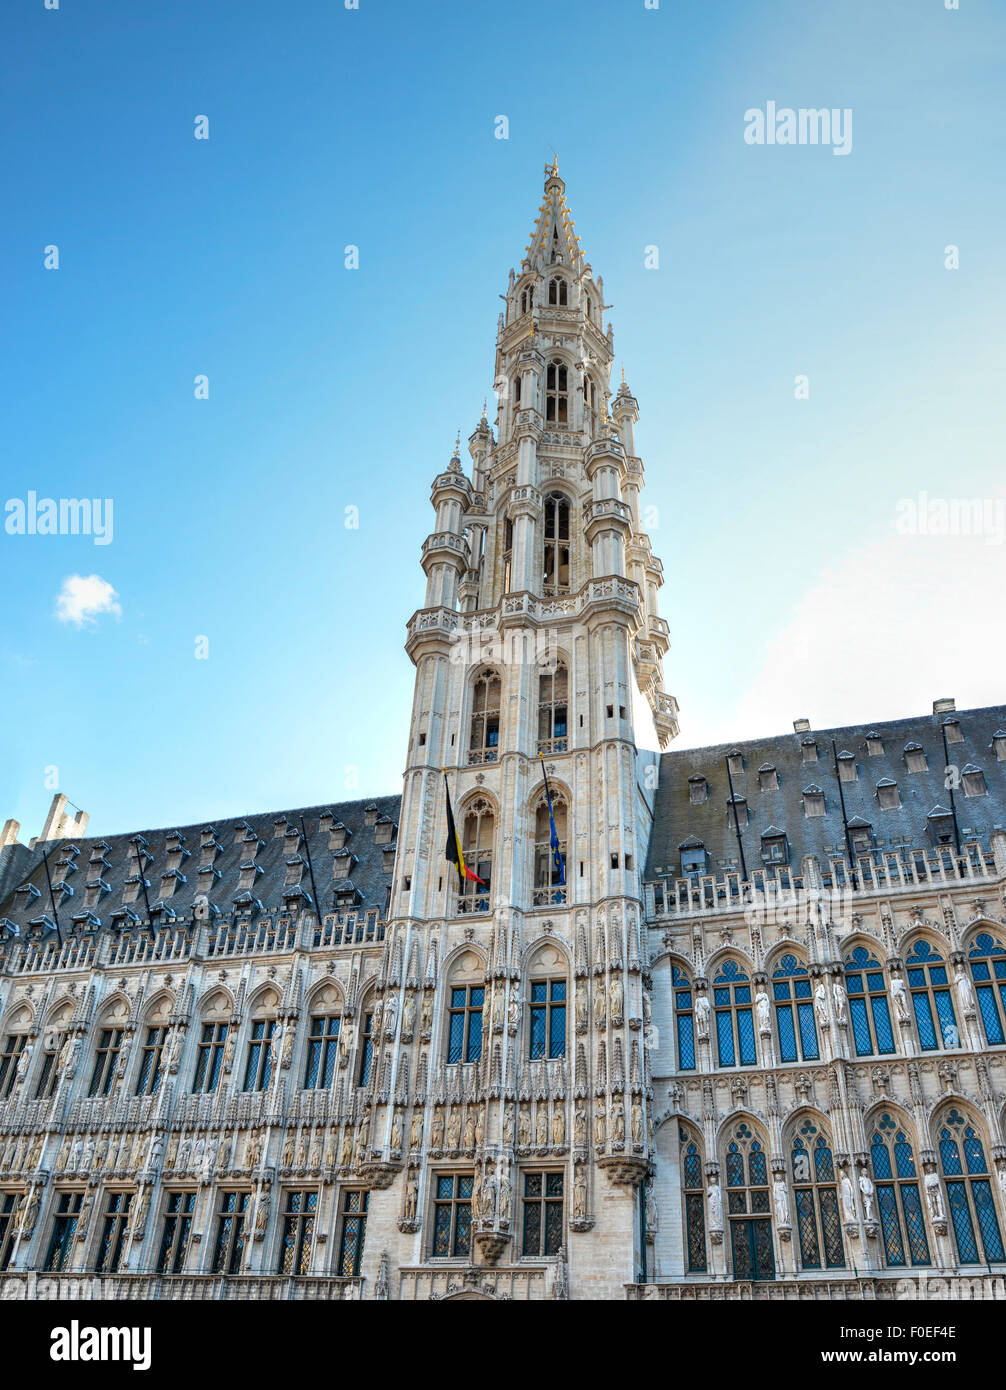 Vue supérieure de l'édifice de l'hôtel de ville de Bruxelles avec un beau ciel bleu Banque D'Images